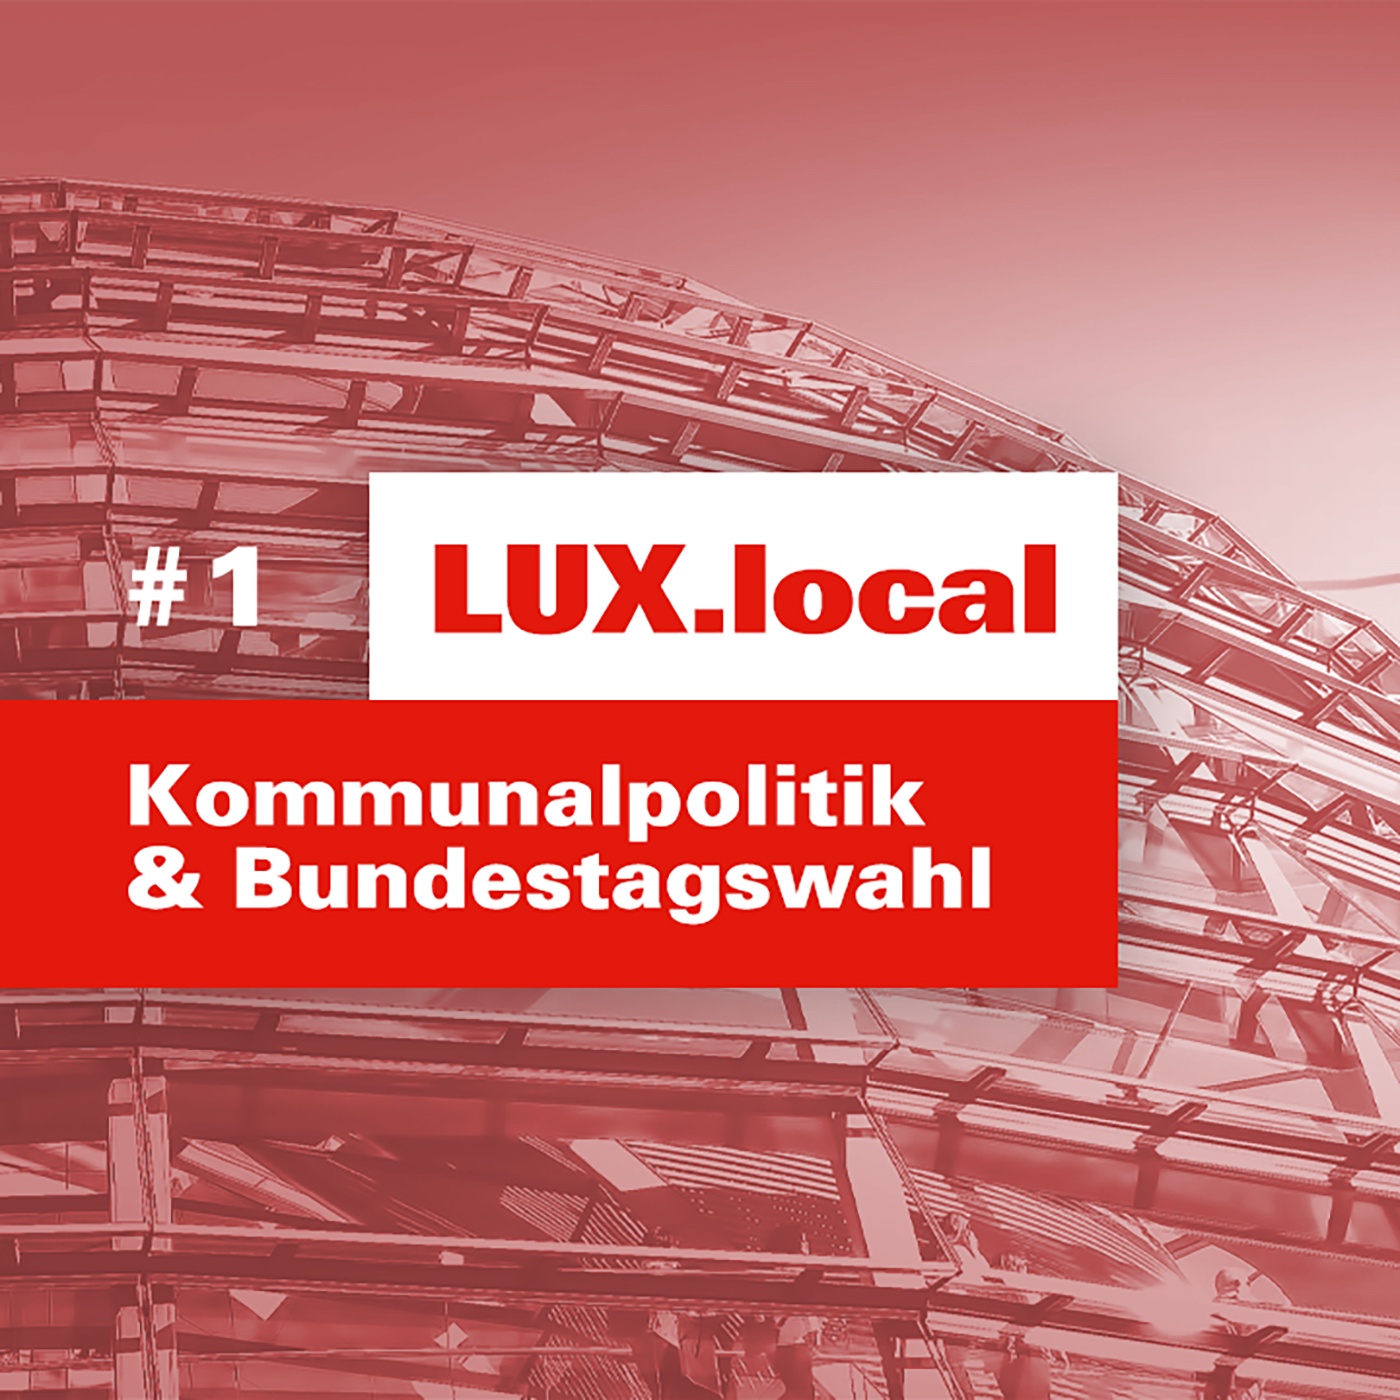 LUX.local #1: Kommunalpolitik und Bundestagswahl